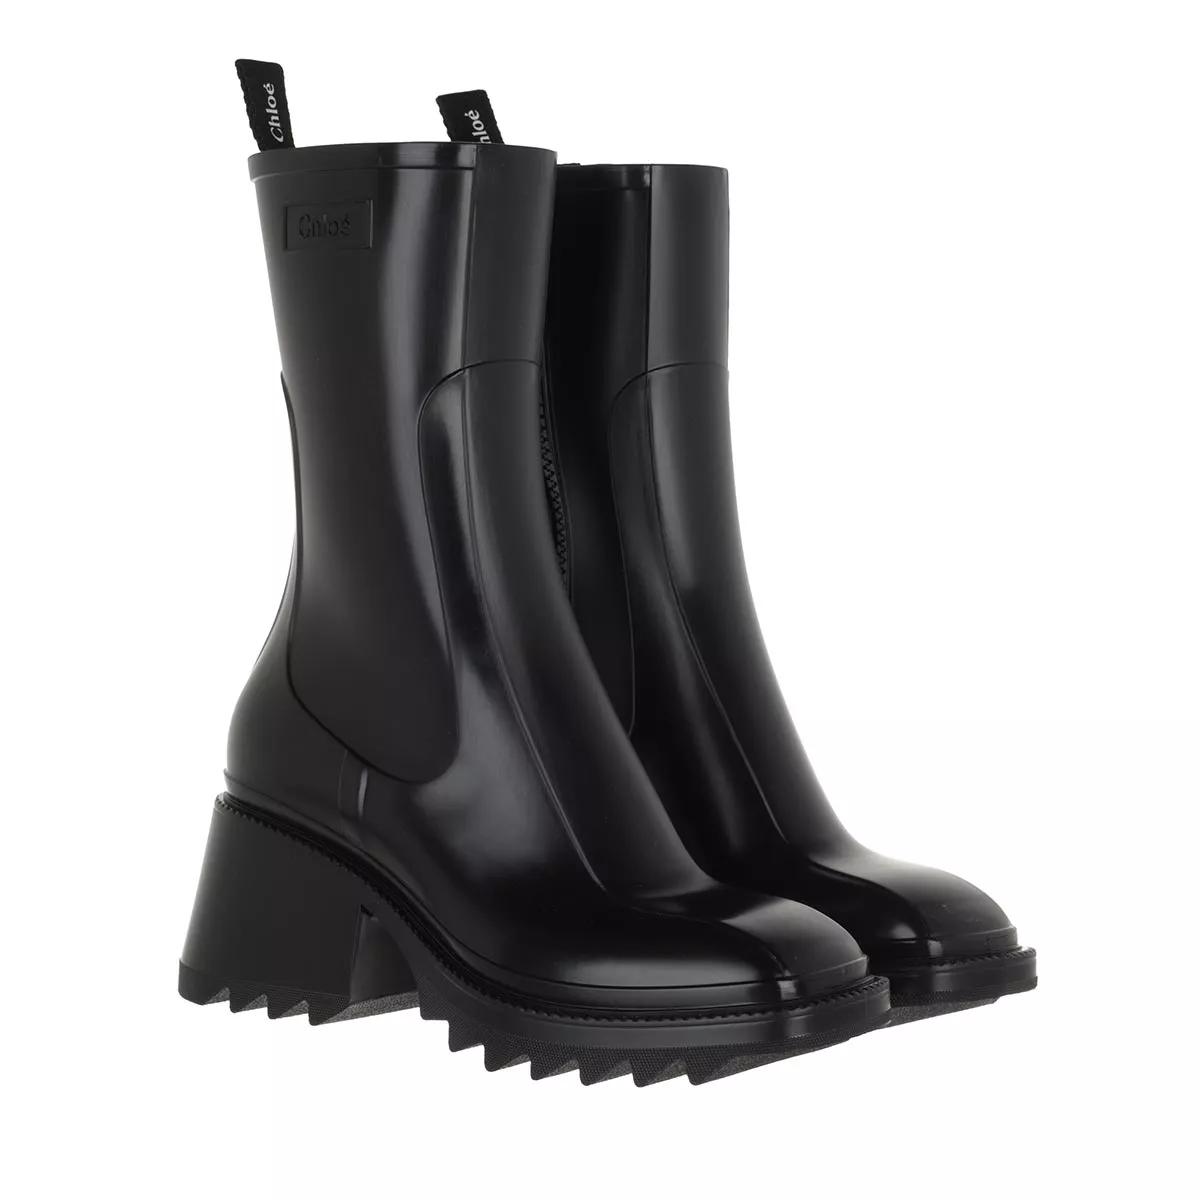 Chloé Boots & laarzen - Betty Rain Boots in zwart in de sale-Chloé 1